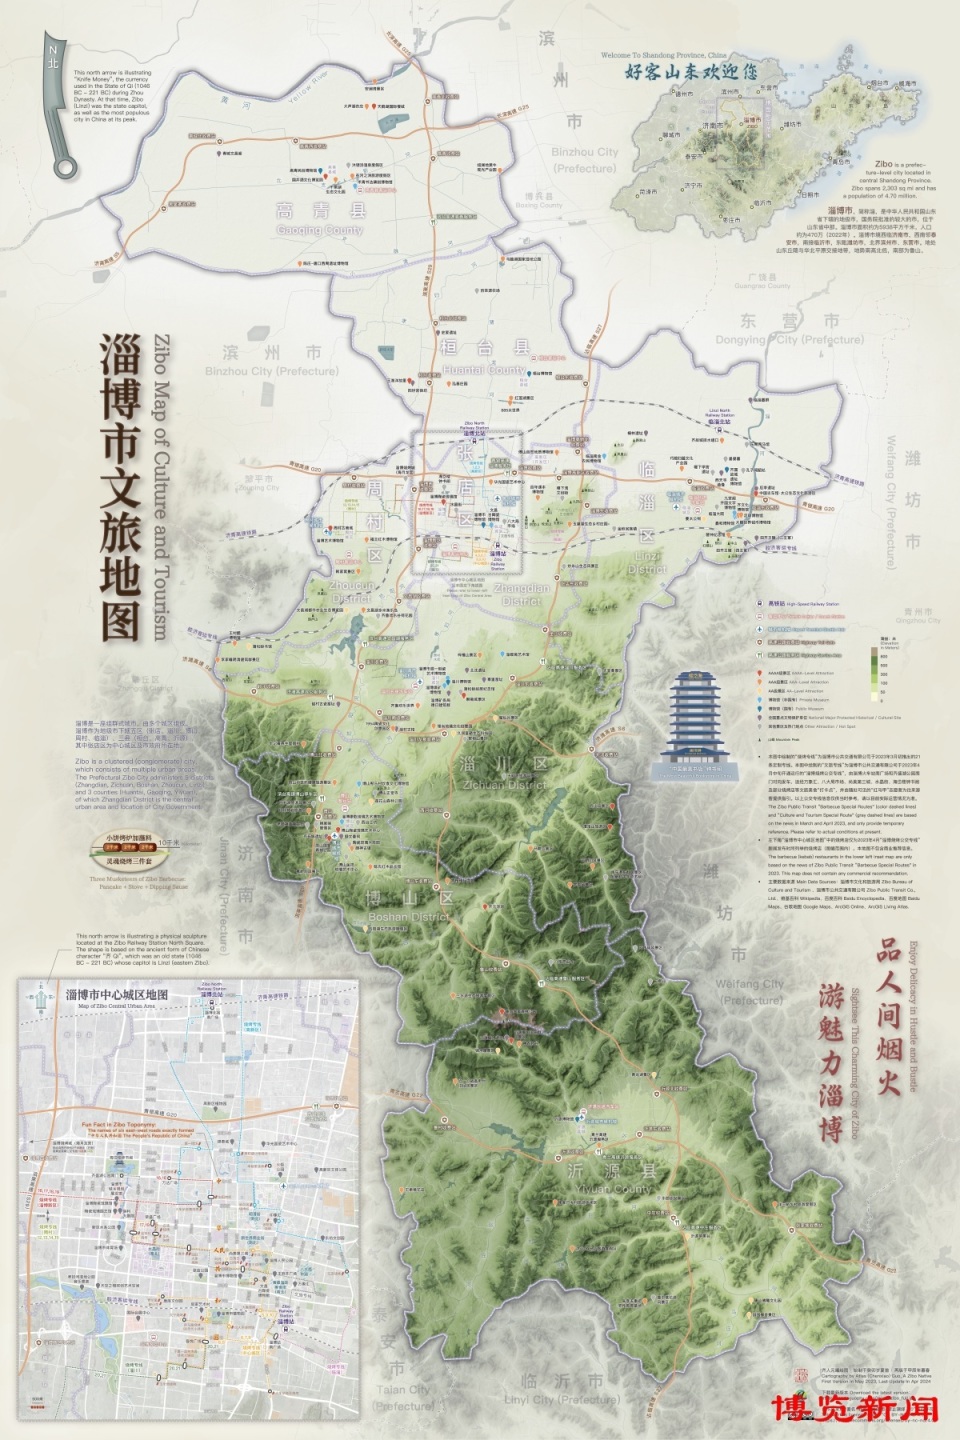 在美留学博士绘制《淄博市文旅地图》